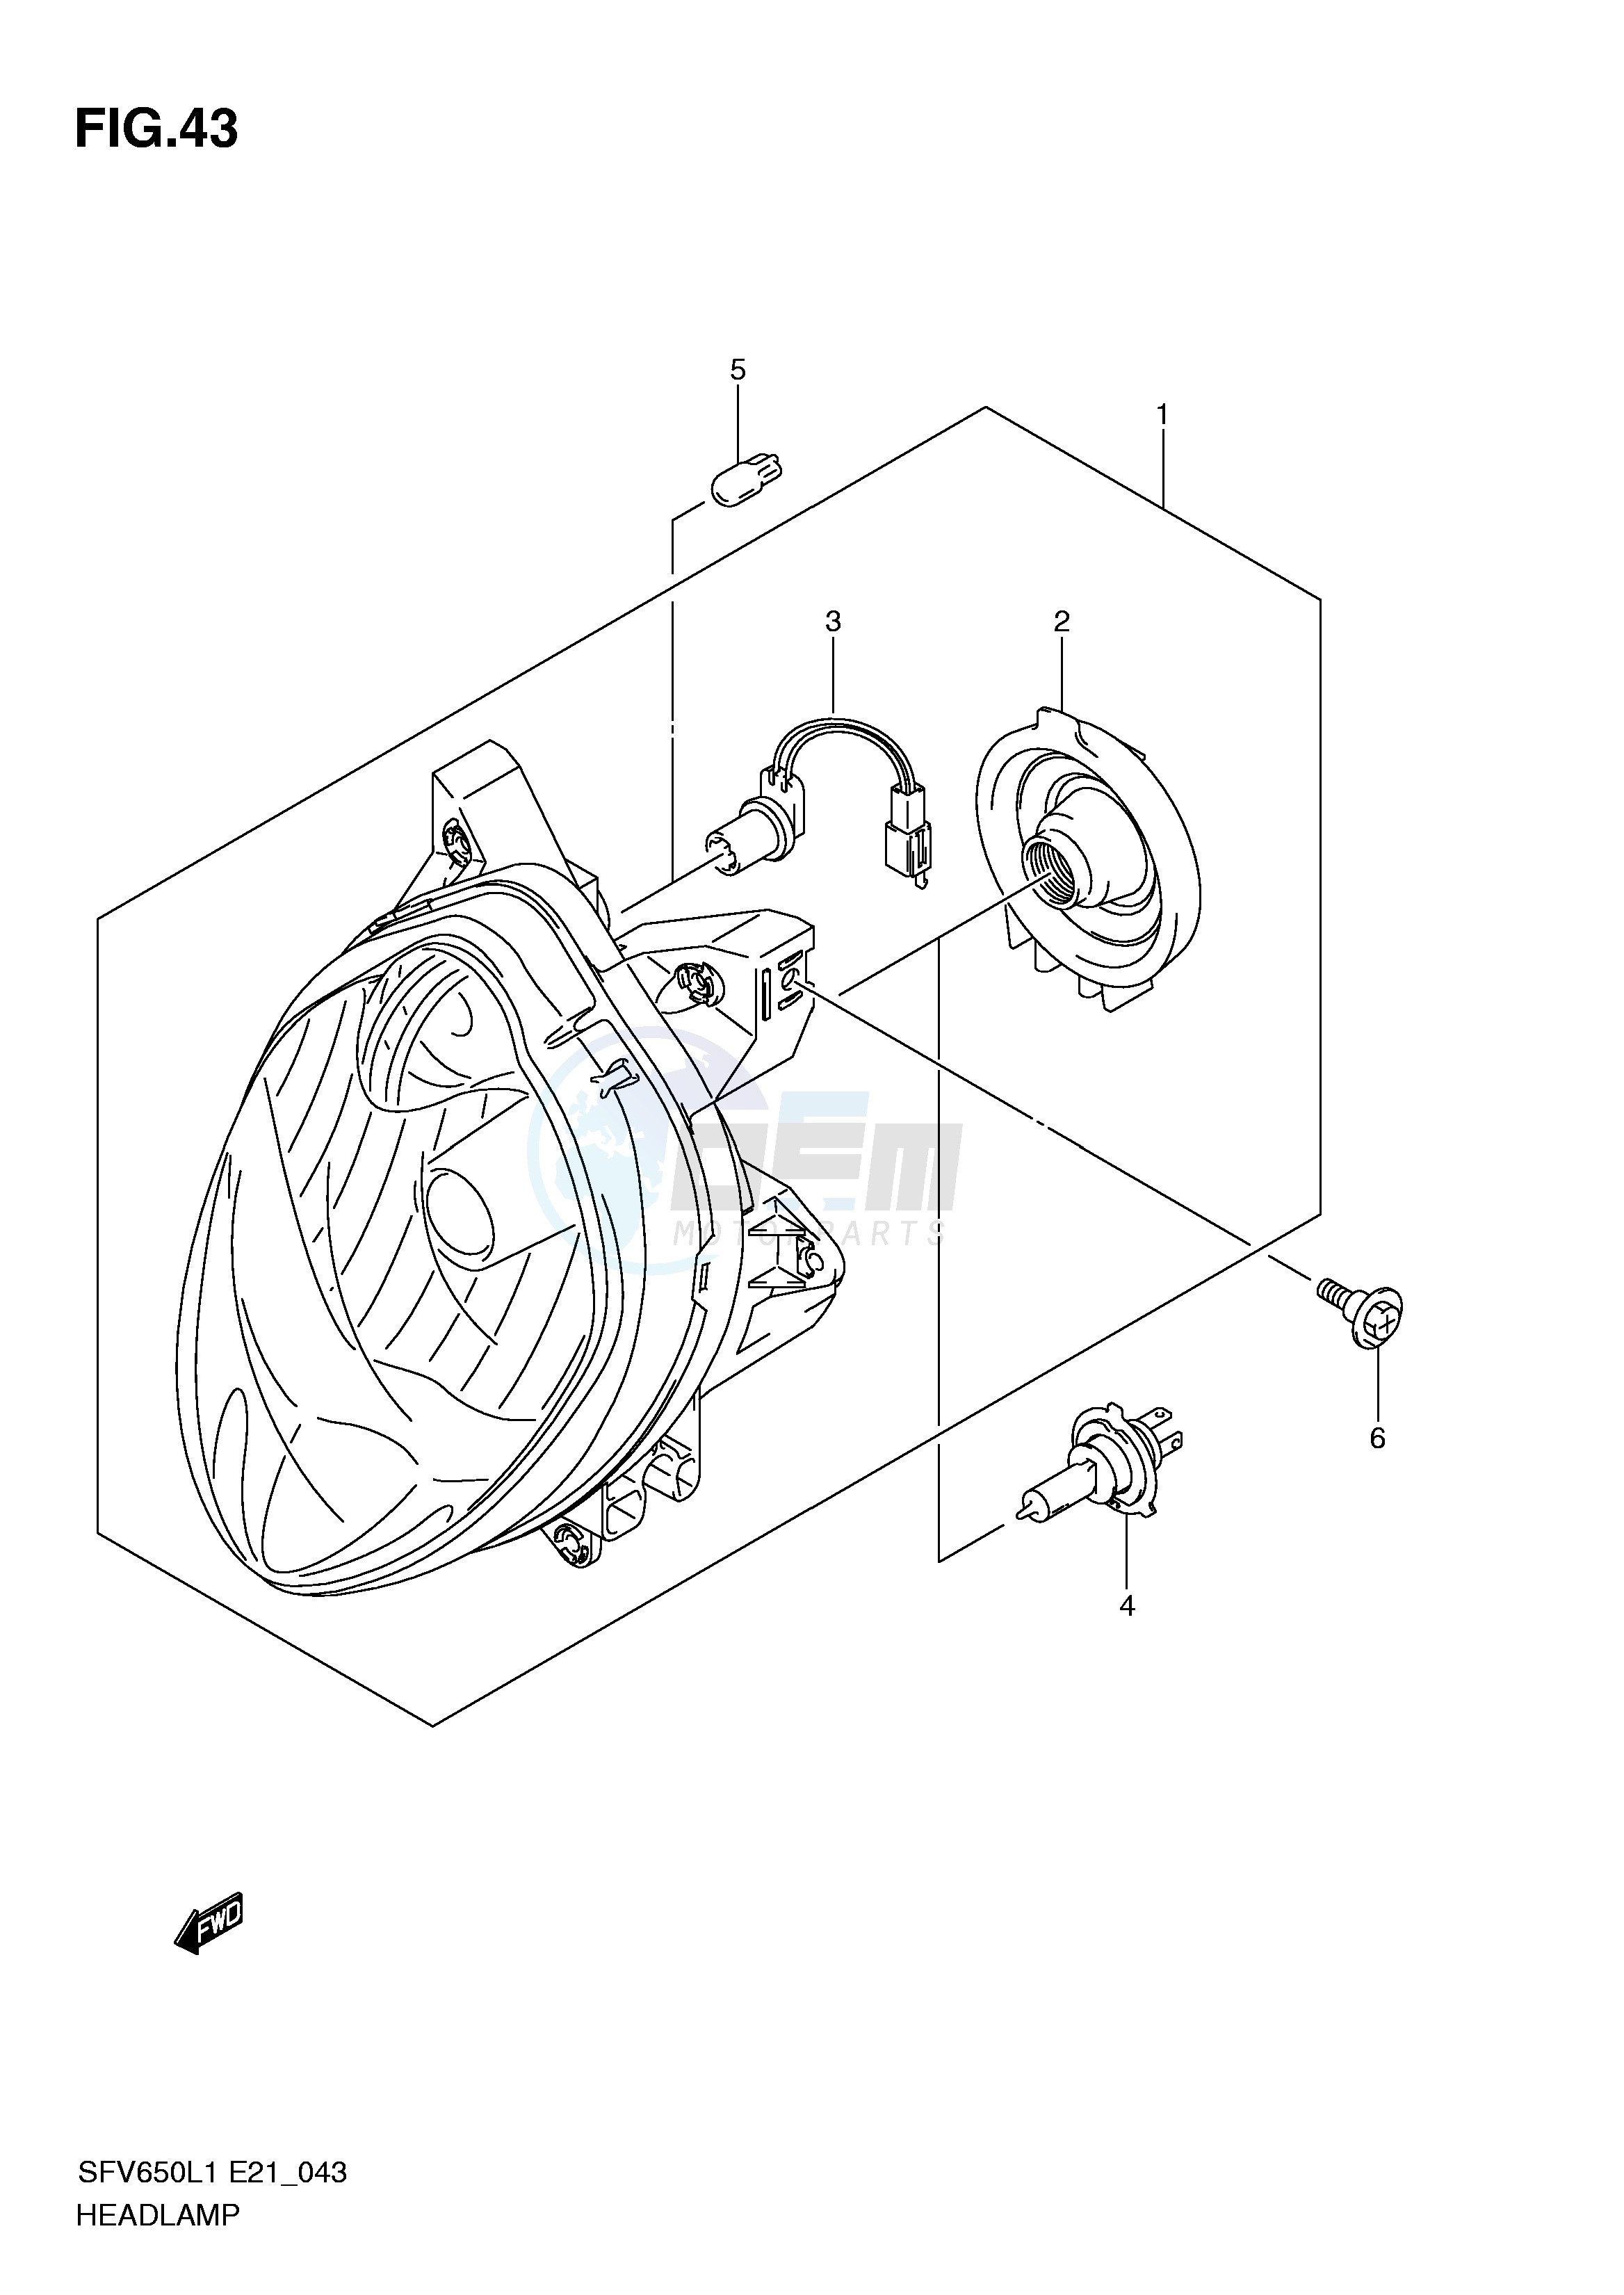 HEADLAMP (SFV650L1 E21) blueprint